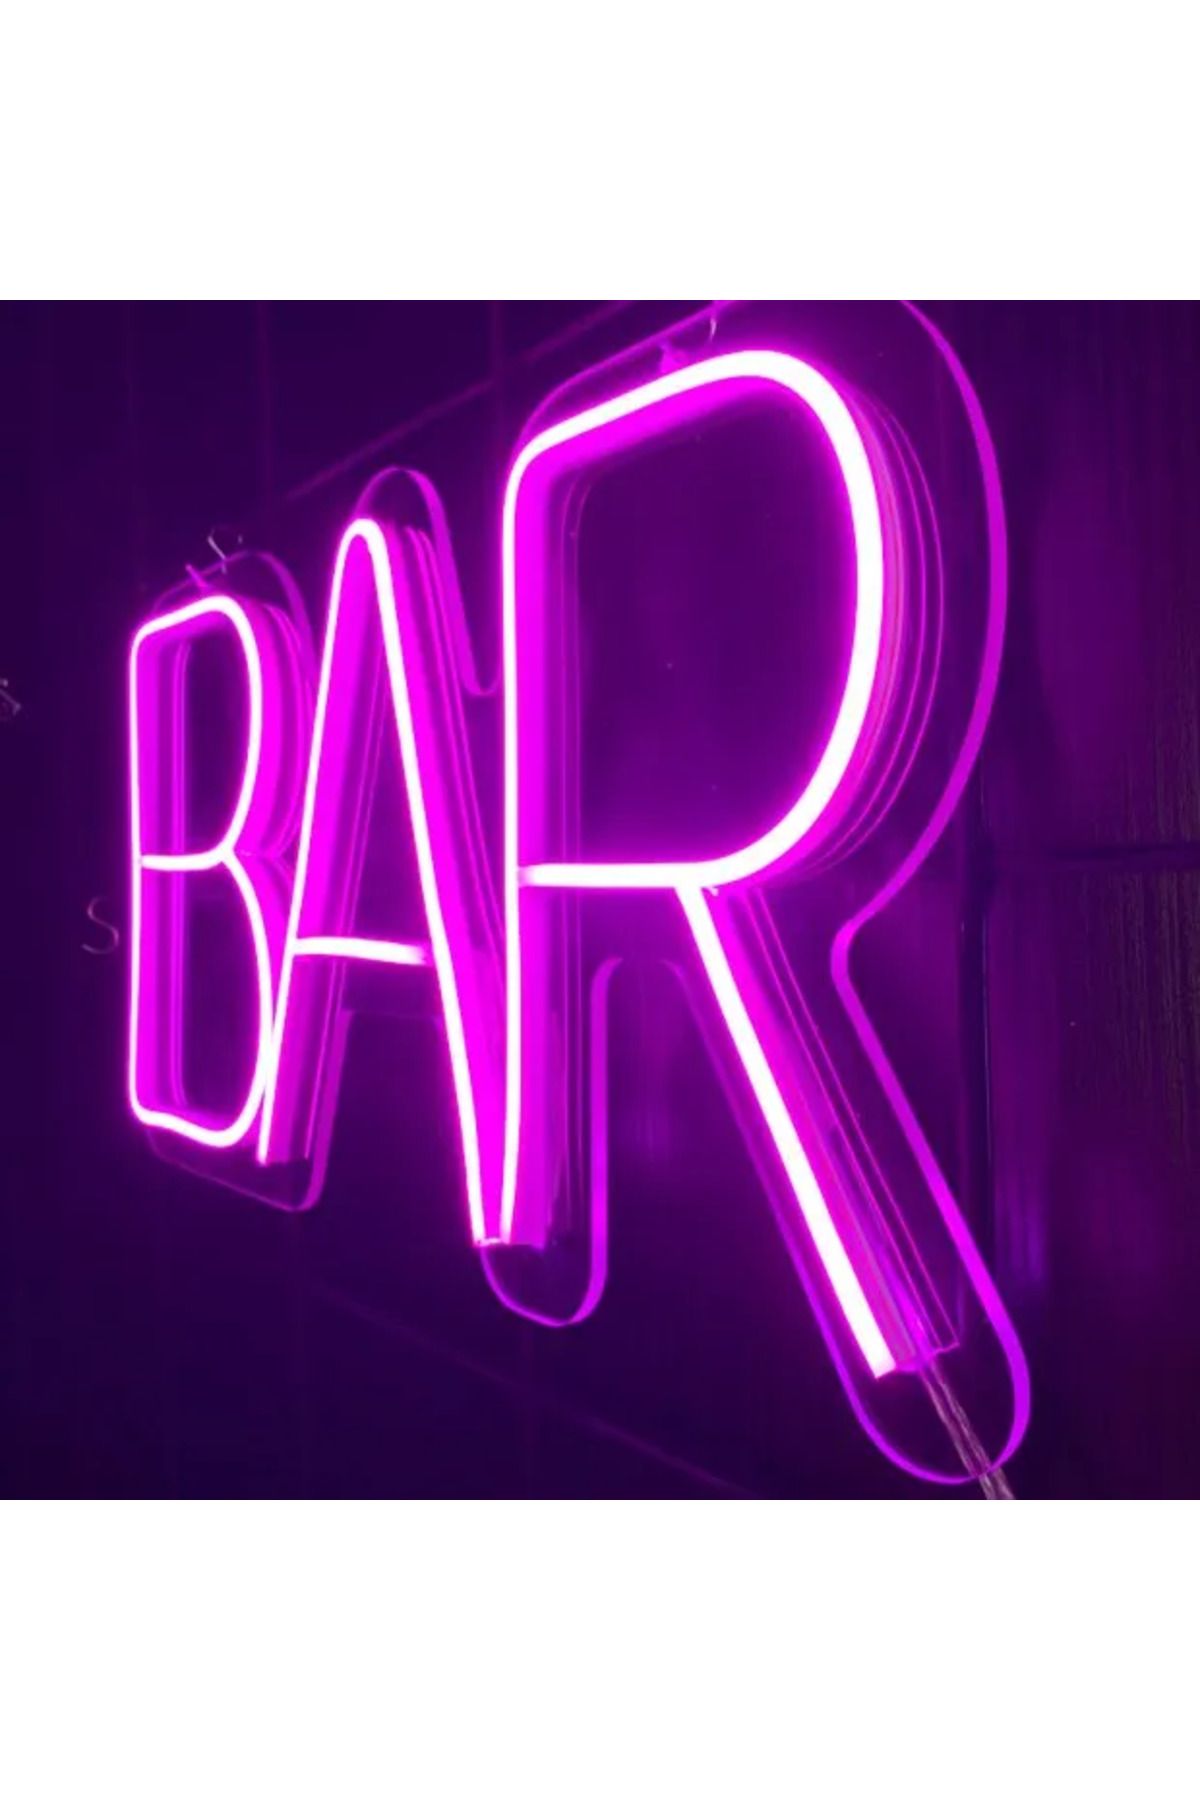 Bir Reklam Bar Yazili Neon Led Işikli Tabela- 45x25 Cm